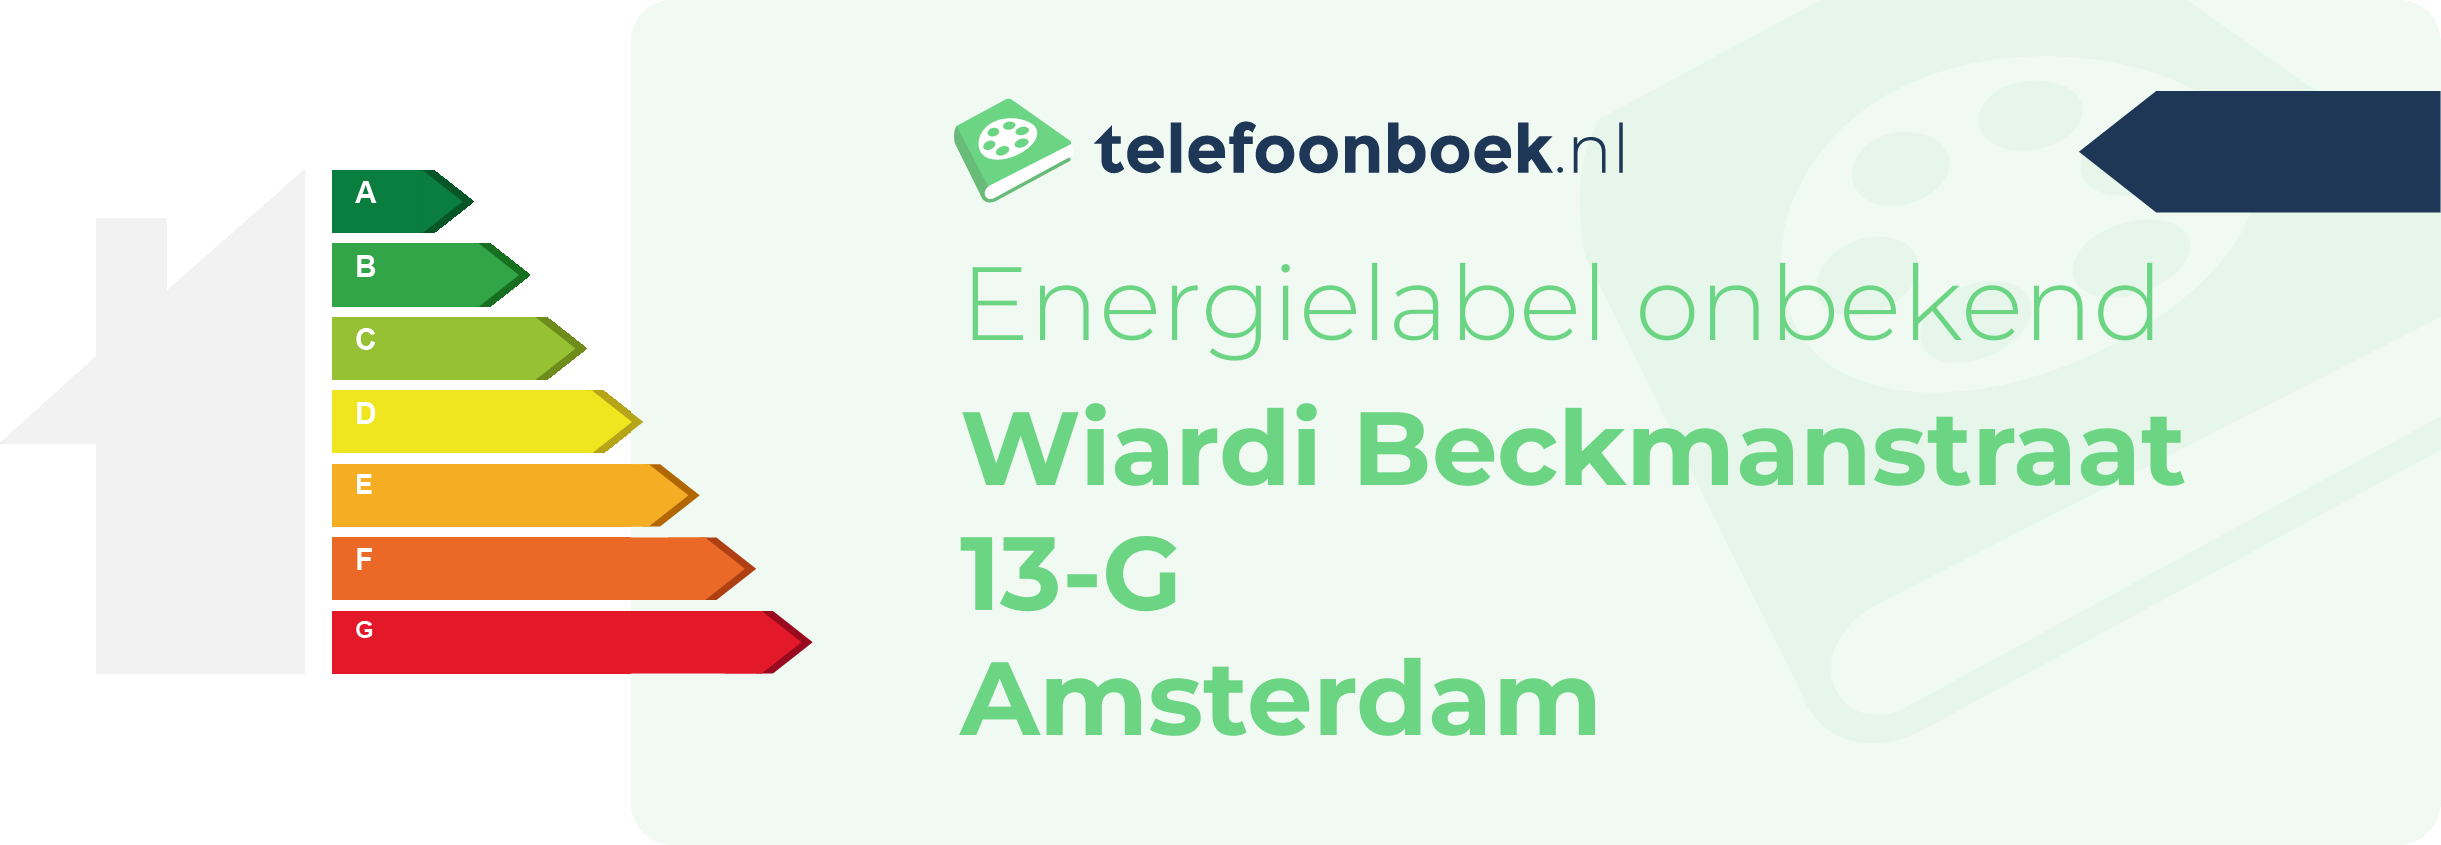 Energielabel Wiardi Beckmanstraat 13-G Amsterdam